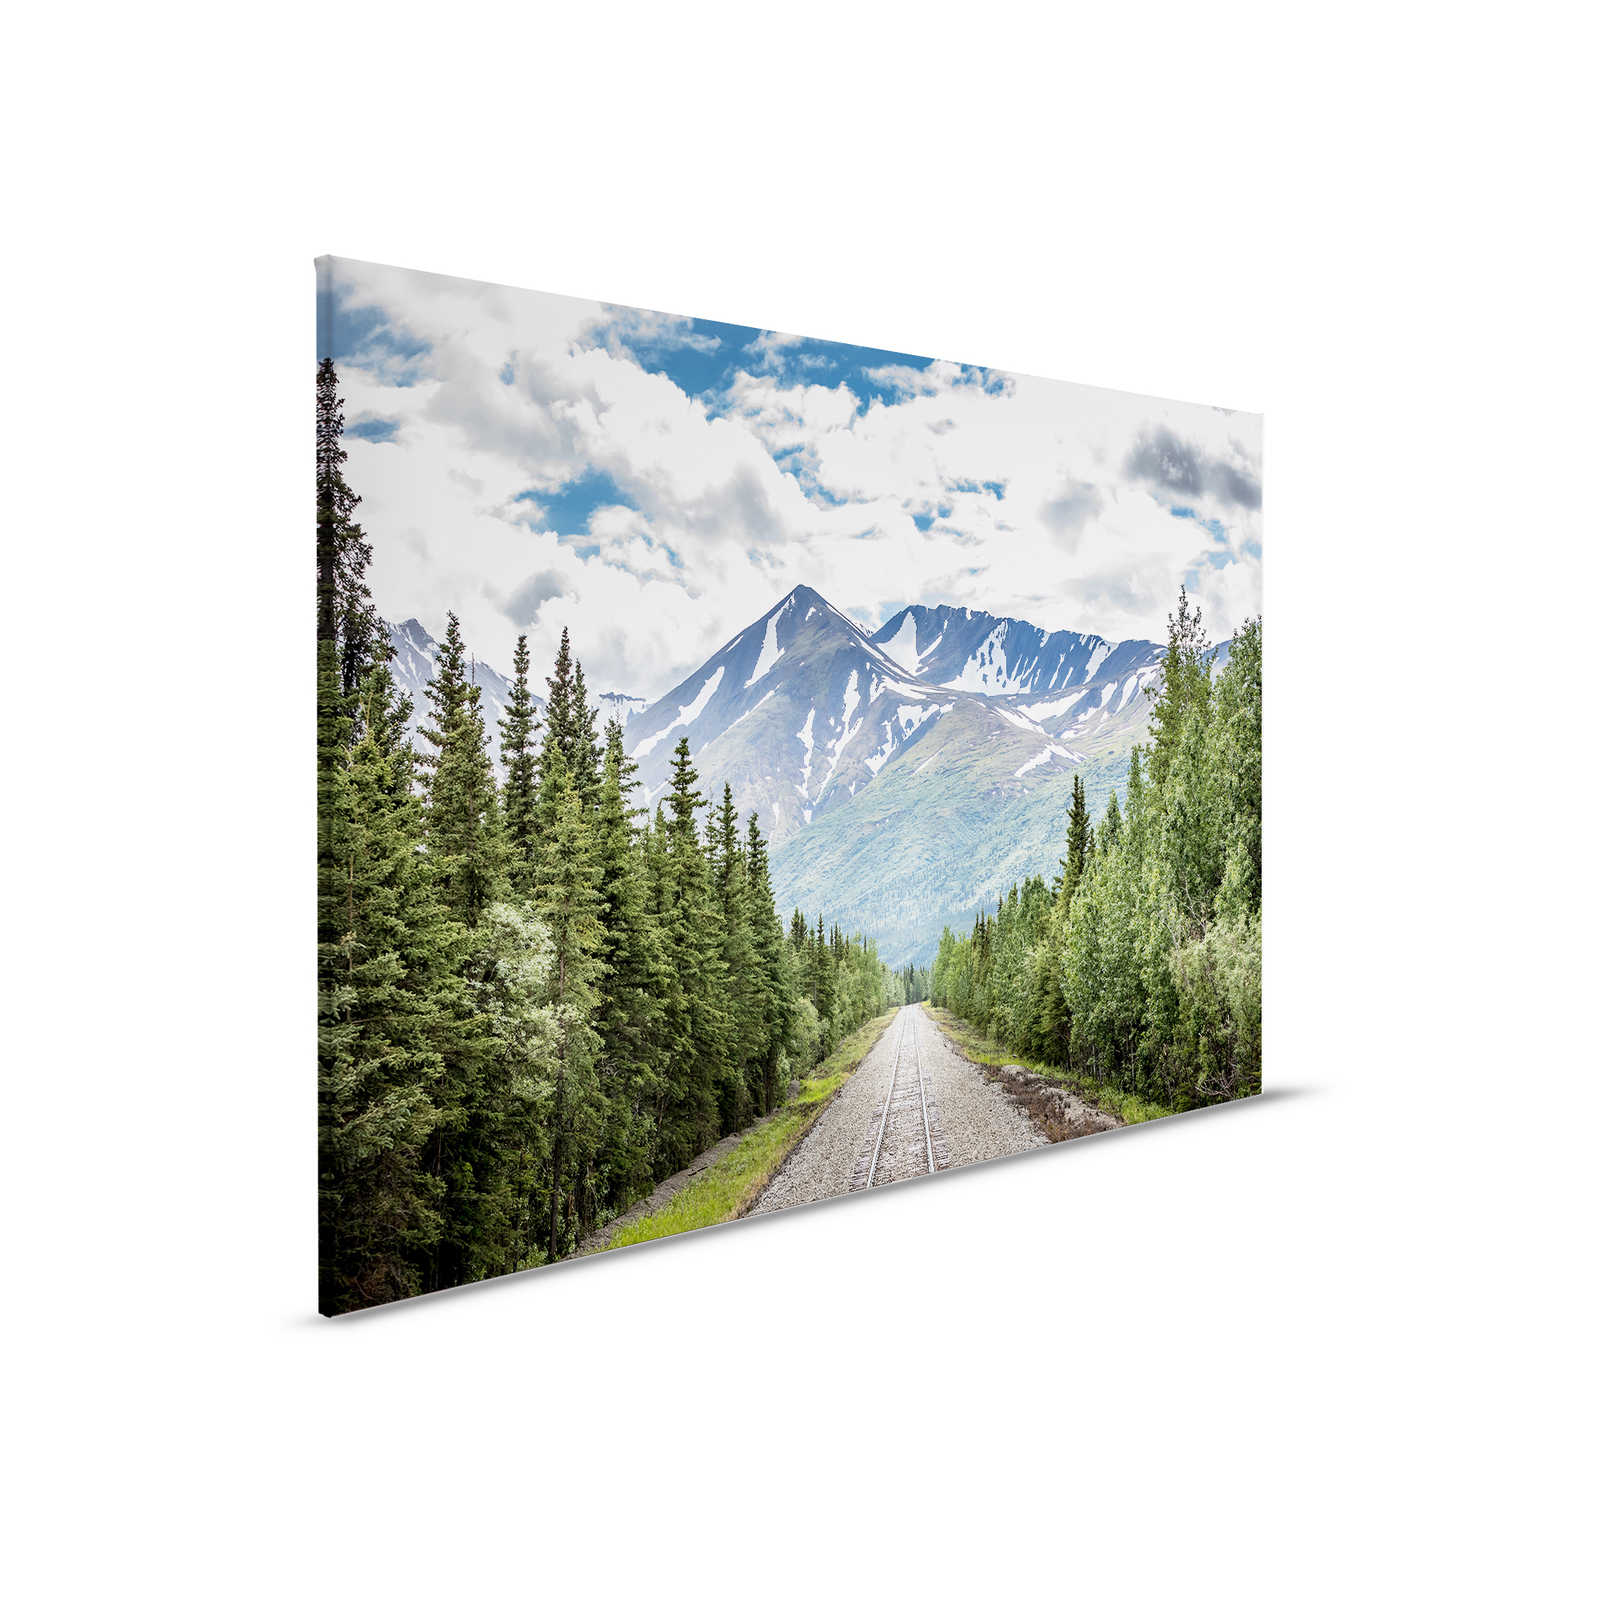 Leinwandbild mit Zuggleisen durch einen Wald am Gebirge – 0,90 m x 0,60 m
